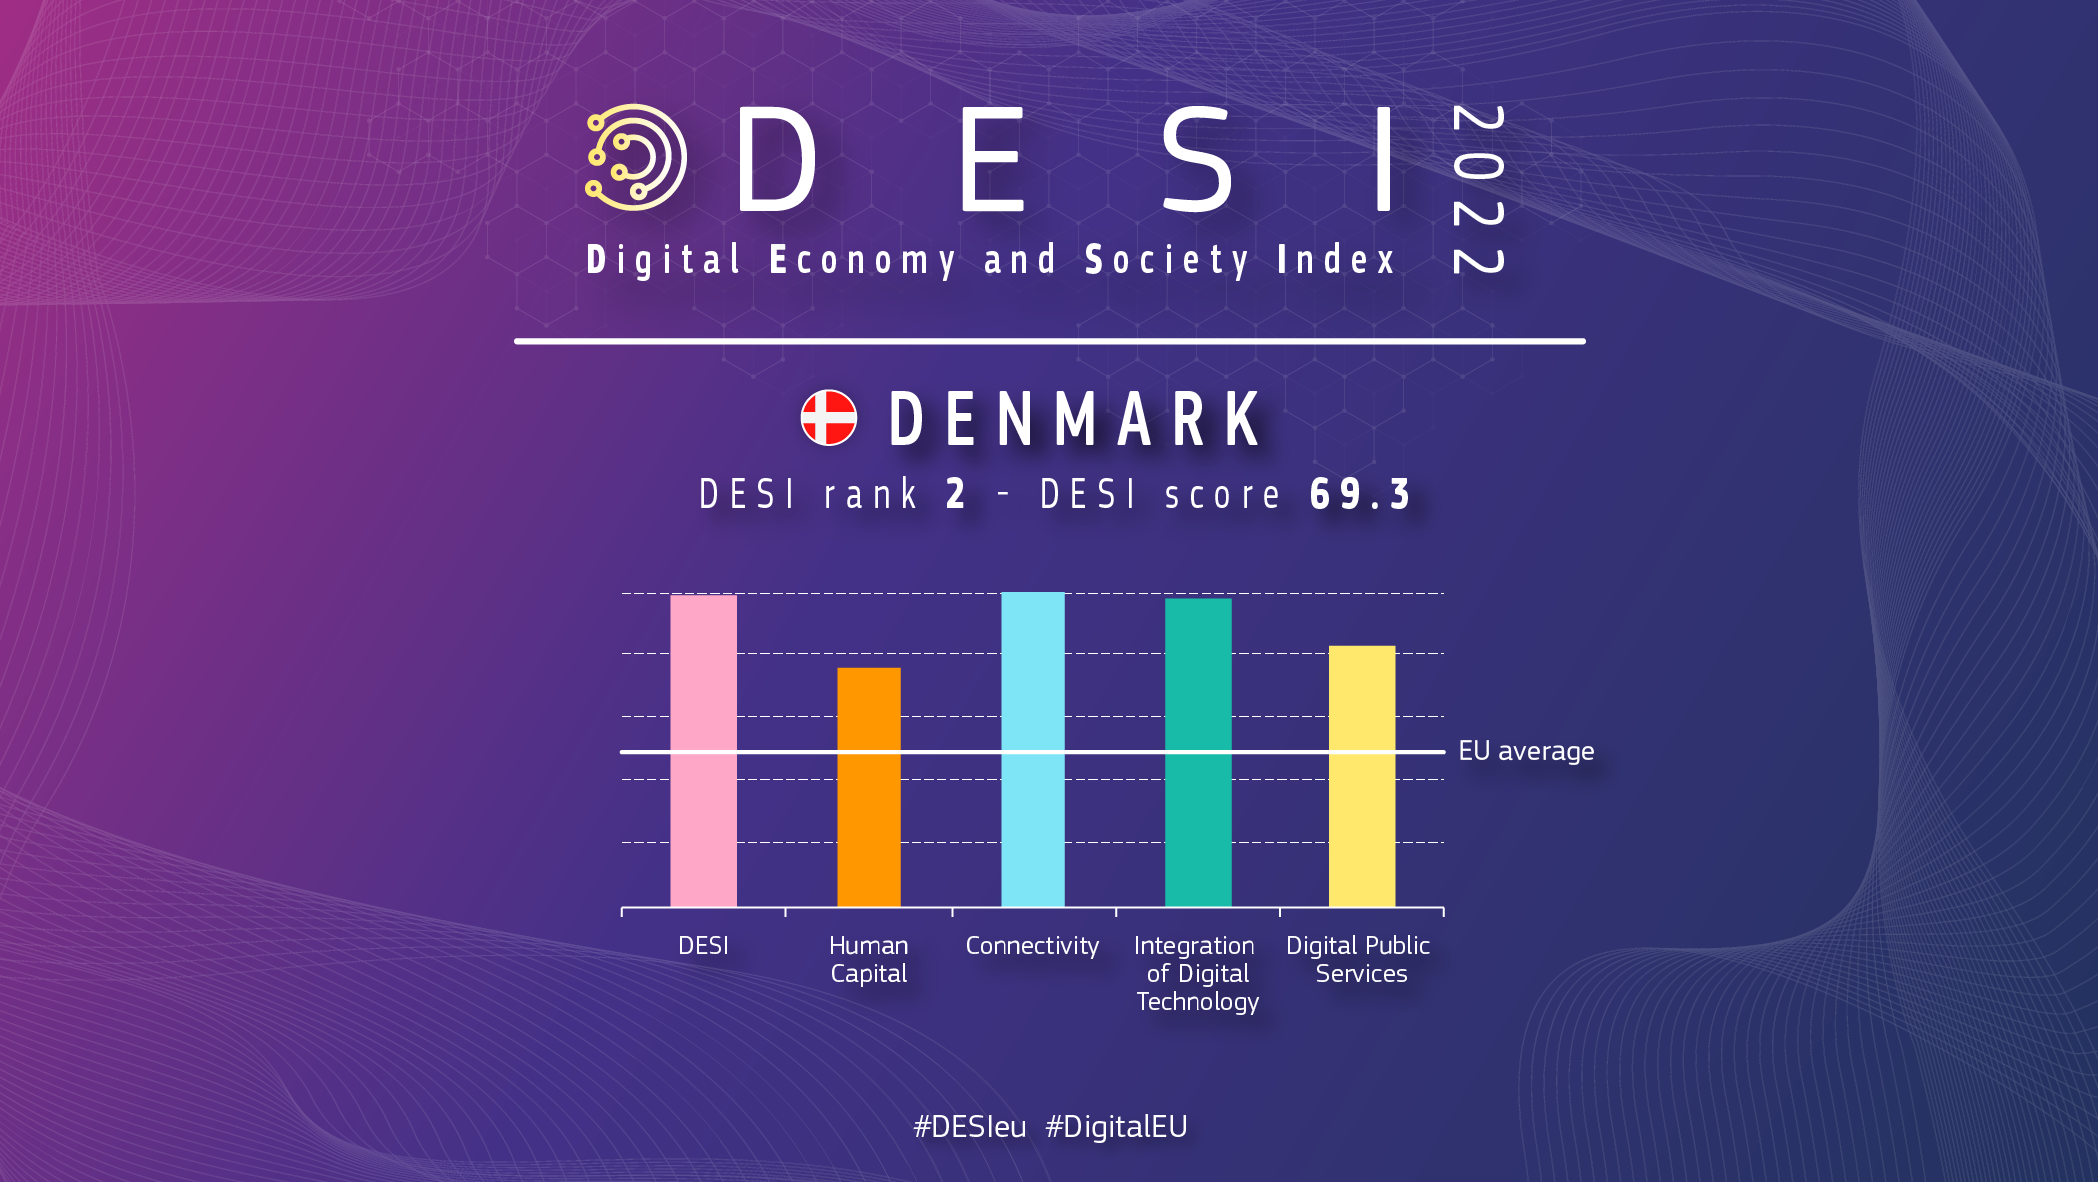 Grafisk oversigt over Danmark i DESI viser en placering på 2 og en score på 69.3